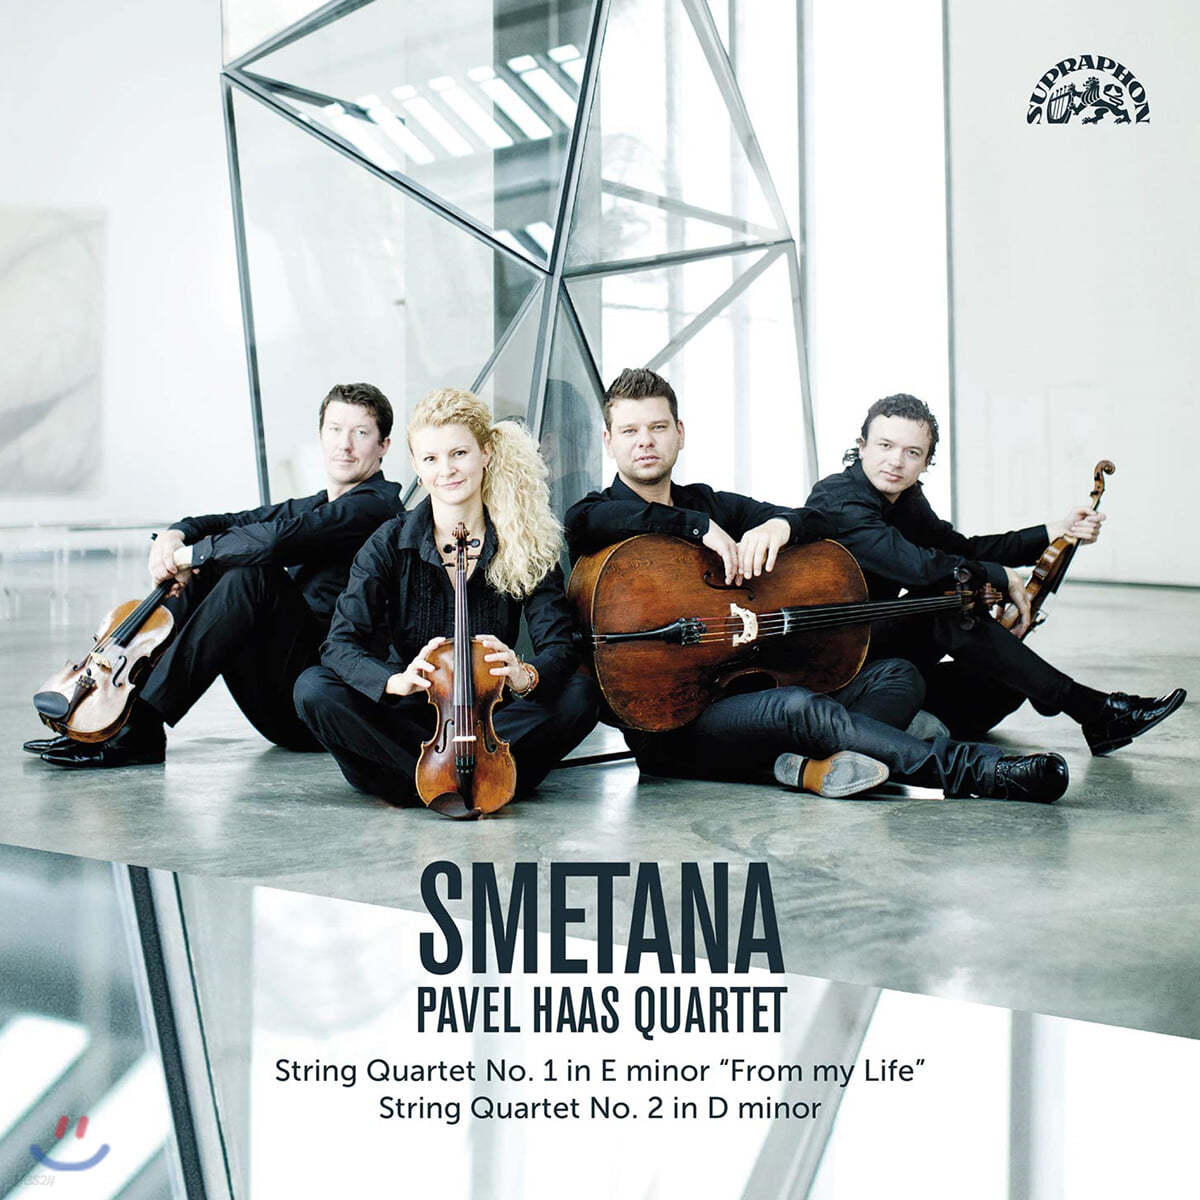 Pavel Haas Quartet 스메타나: 현악 사중주 1, 2번 - 파벨 하스 콰르텟 (Smetana: String Quartets Nos. 1, 2) [LP]